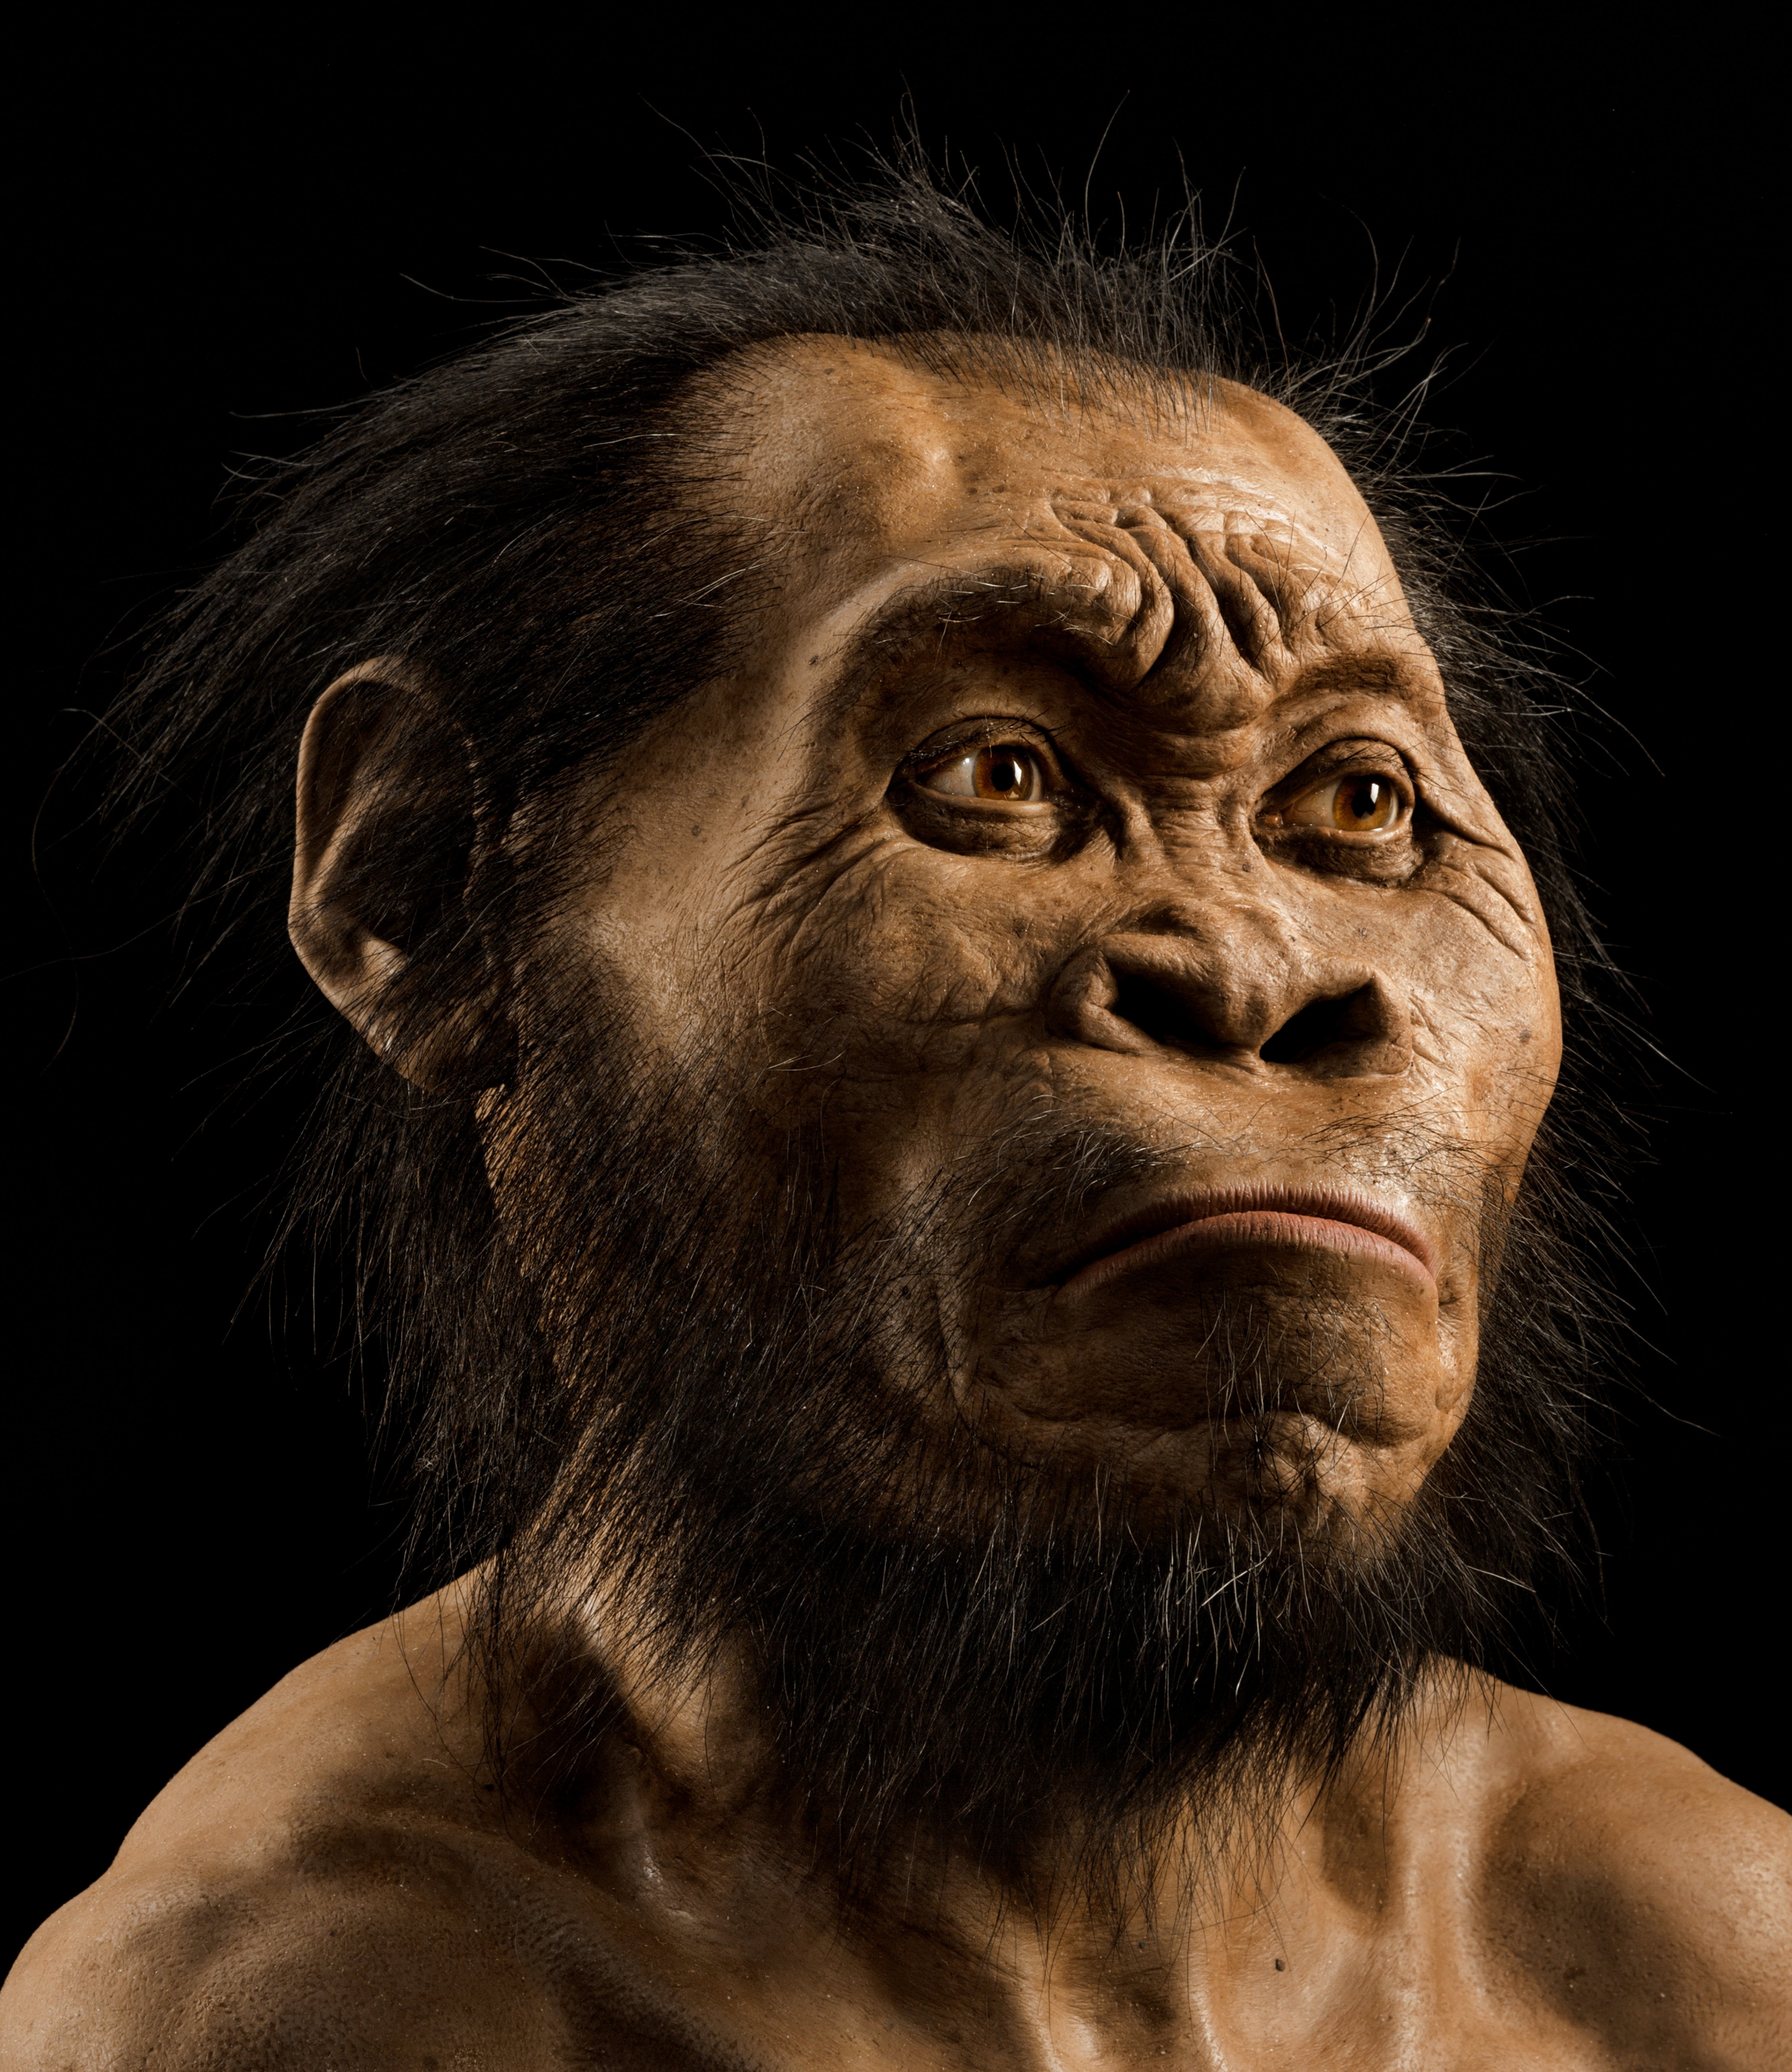 Reconstrucción de la cabeza del Homo naledi realizada por el paleoartista John Gurche, que dedicó 700 horas a recrearla a partir de escáneres óseos